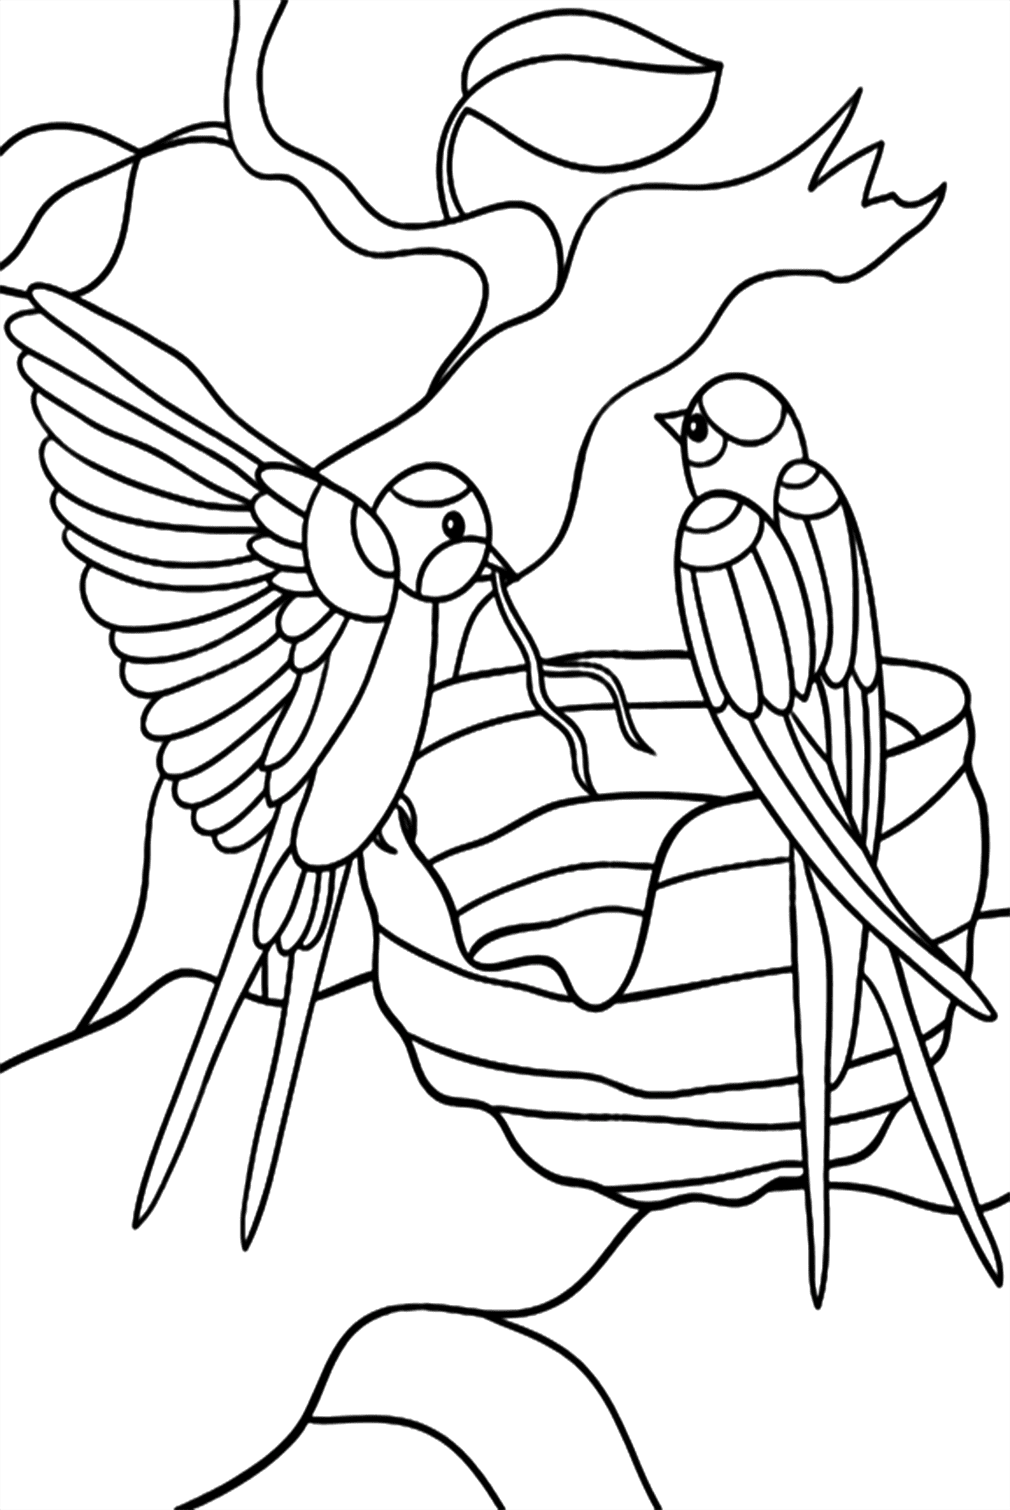 Twee zwaluwen kleurplaten van Swallow